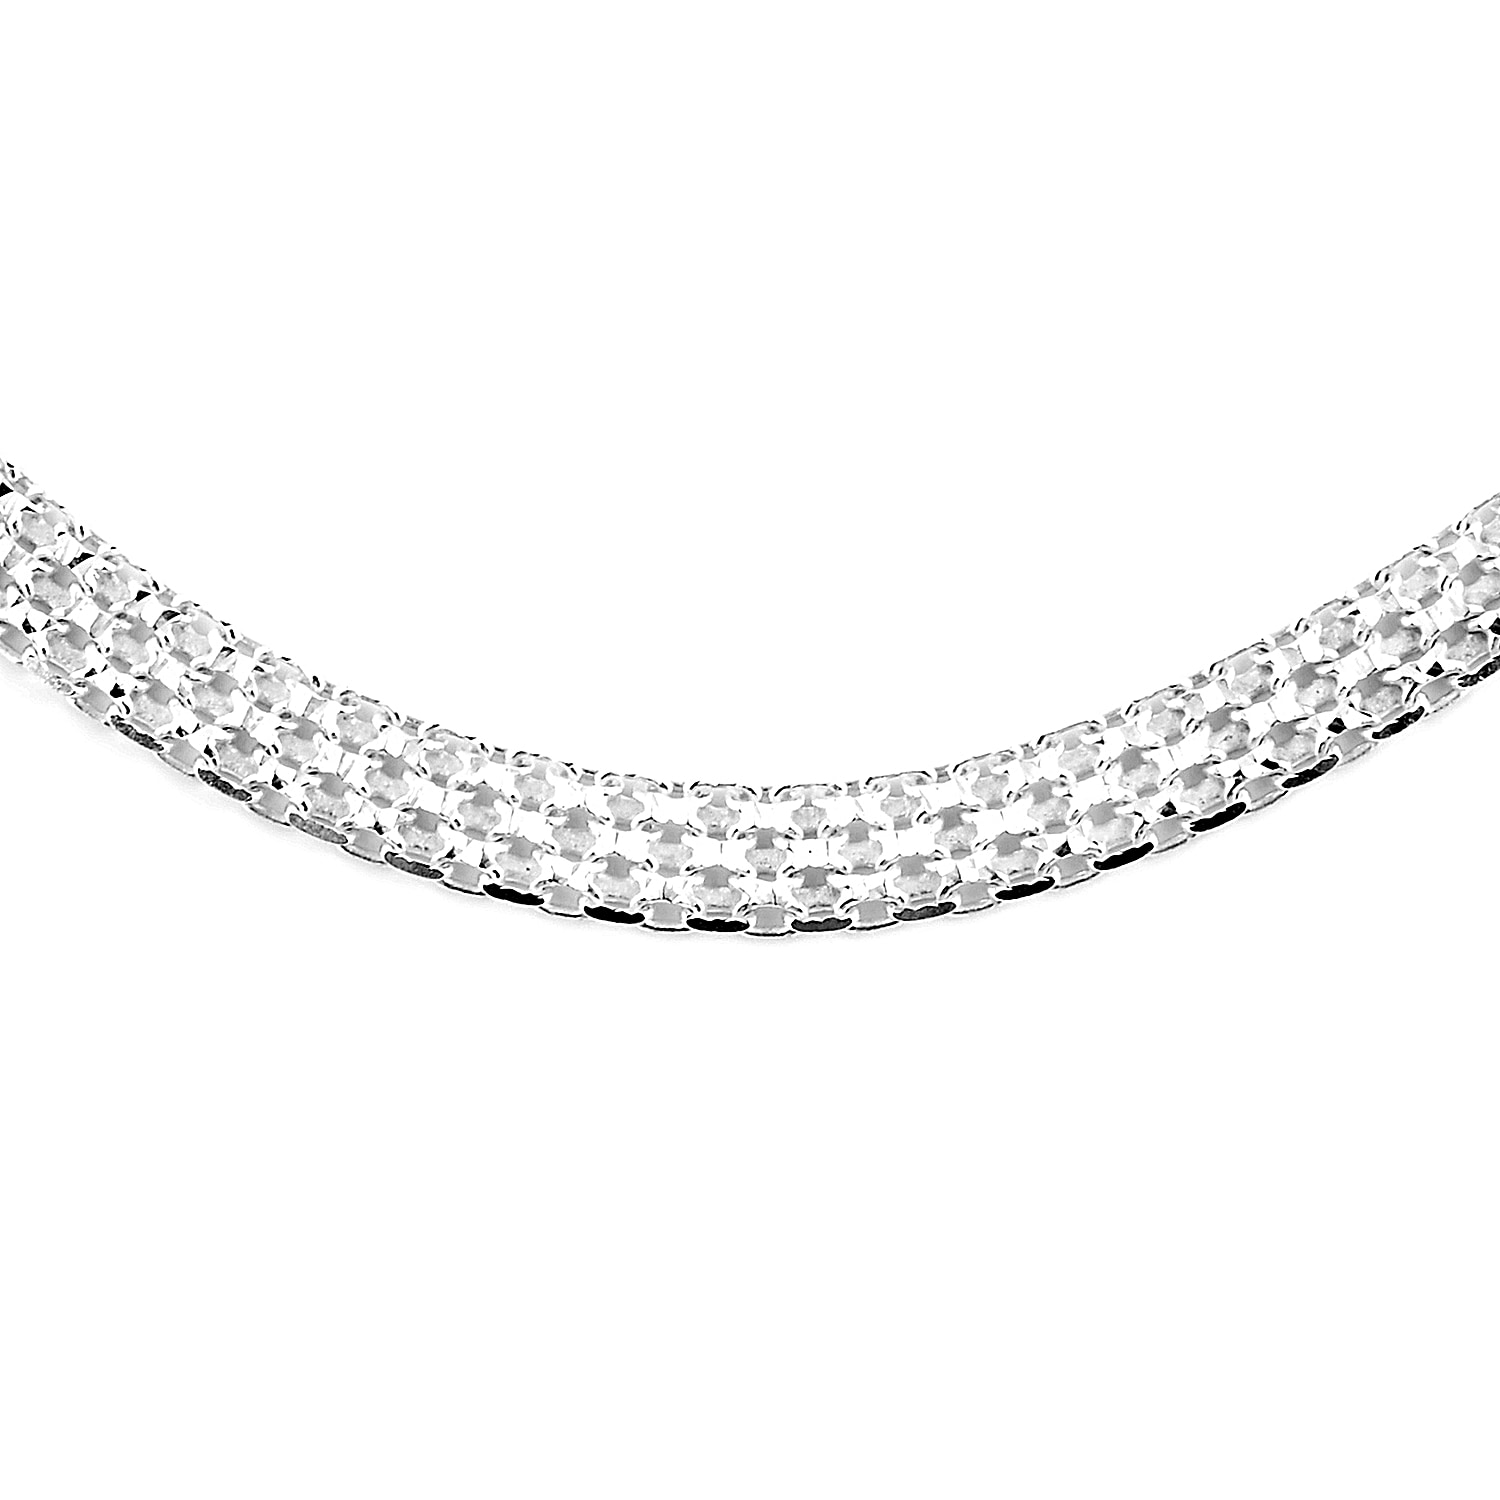 Hatton Garden Closeout - Rhodium Overlay Sterling Silver Bismark Necklace (Size - 20), Silver Wt. 33.2 Gms